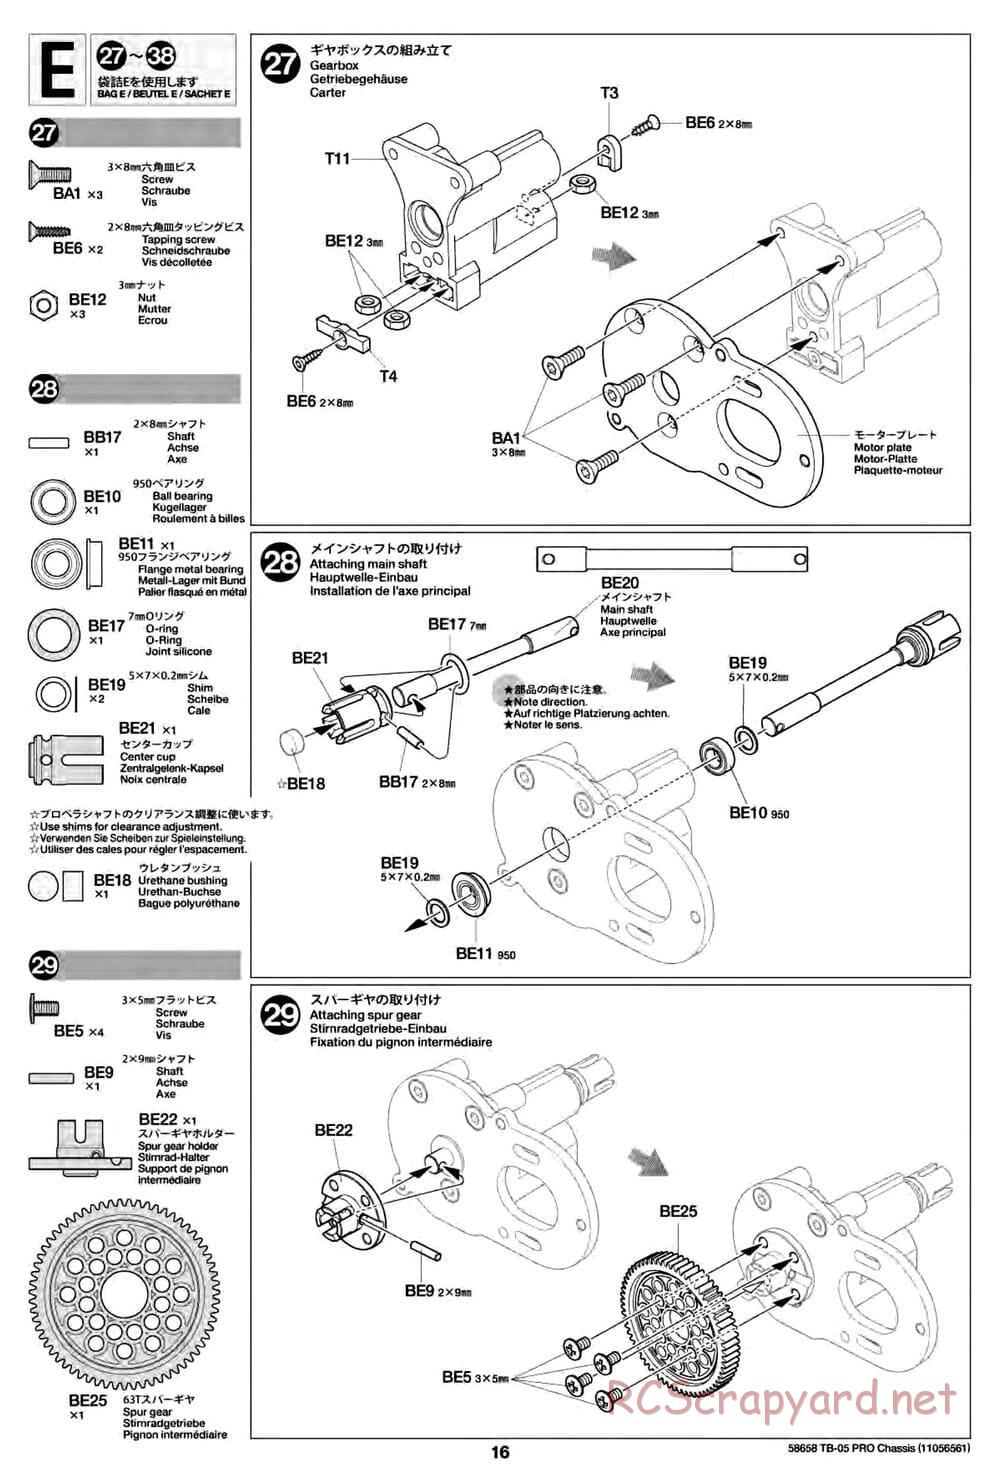 Tamiya - TB-05 Pro Chassis - Manual - Page 16